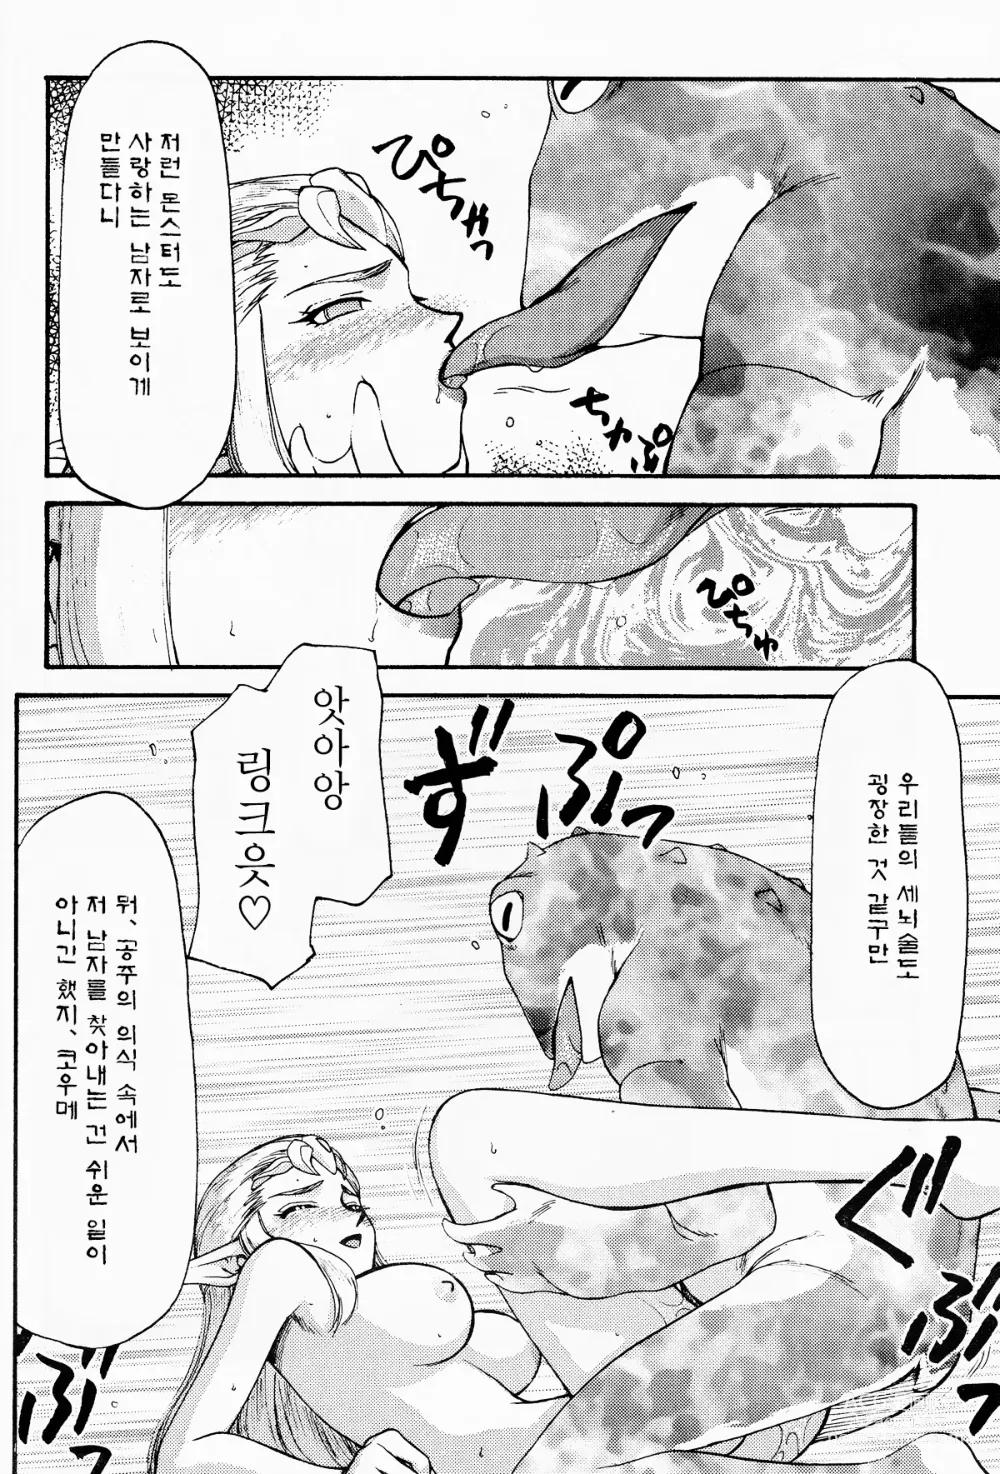 Page 19 of doujinshi NISE Zelda no Densetsu Shinshou